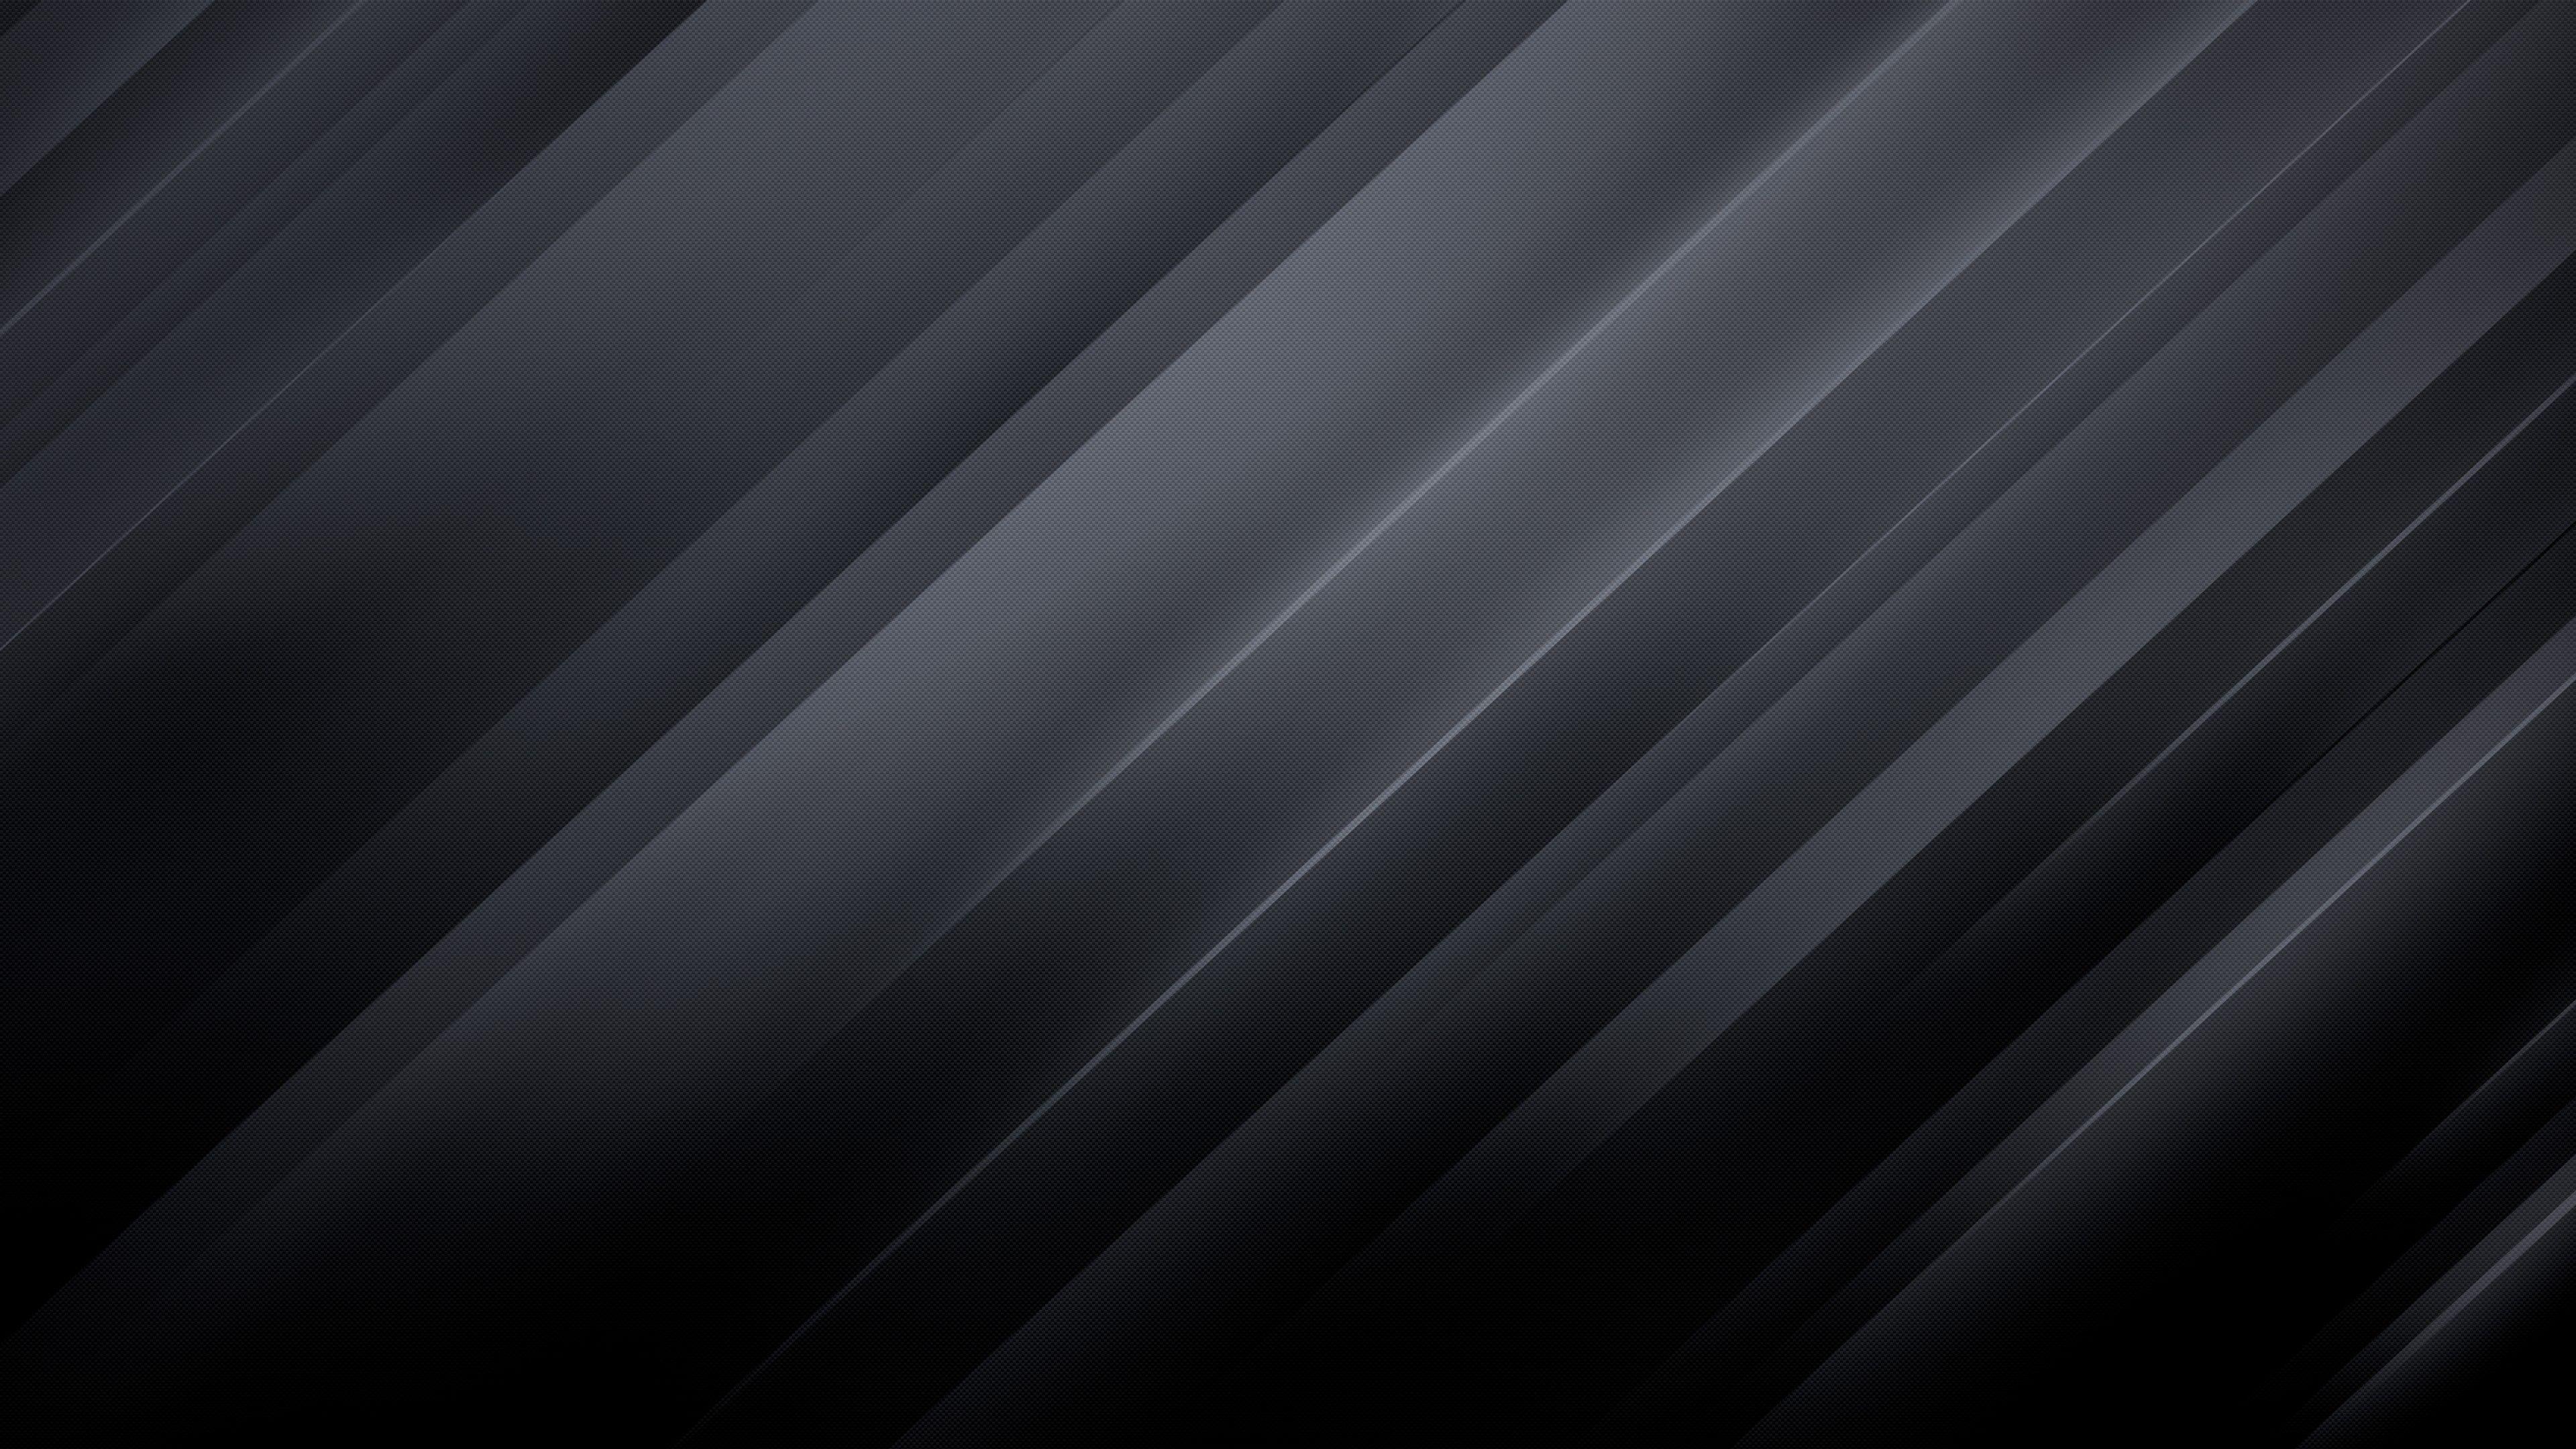 69+ Черный Абстрактный обои на рабочий ��тол, компьютер, телефон, iPhone, Android, Windows от matthewreed